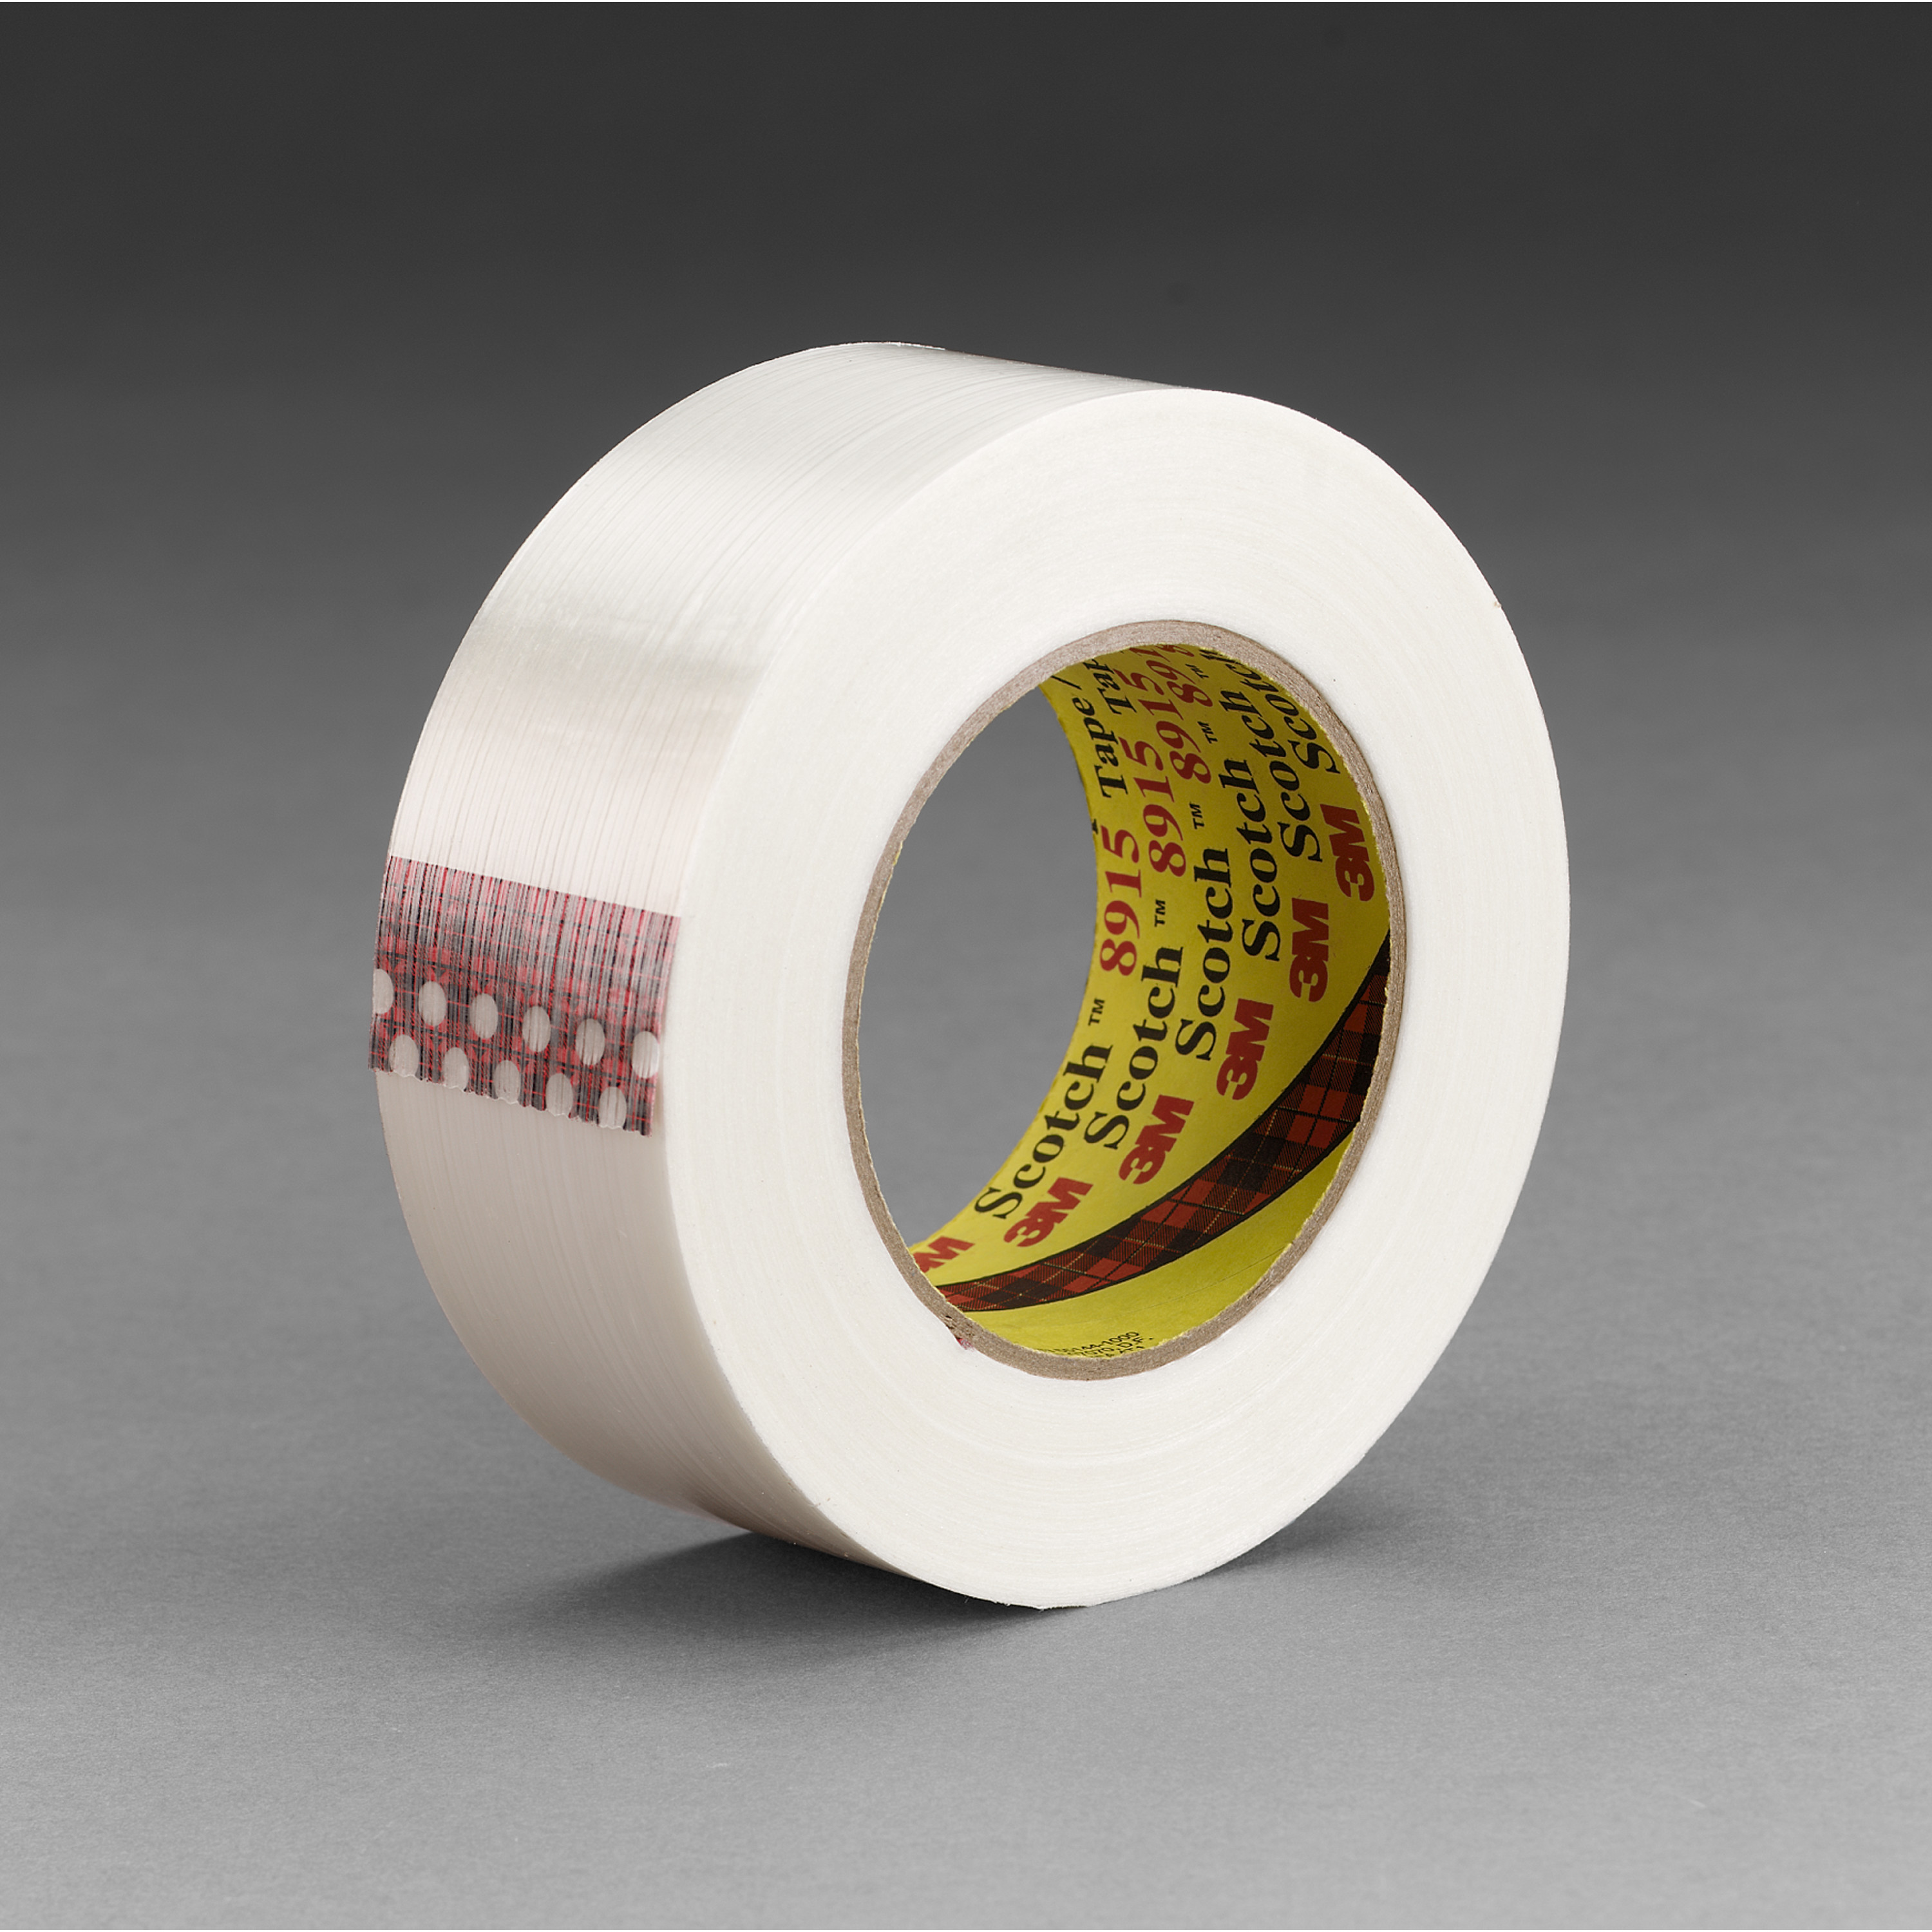 Scotch® Filament Tape Clean Removal 8915, 36 mm x 55 m, 6 mil, 24 rolls
per case